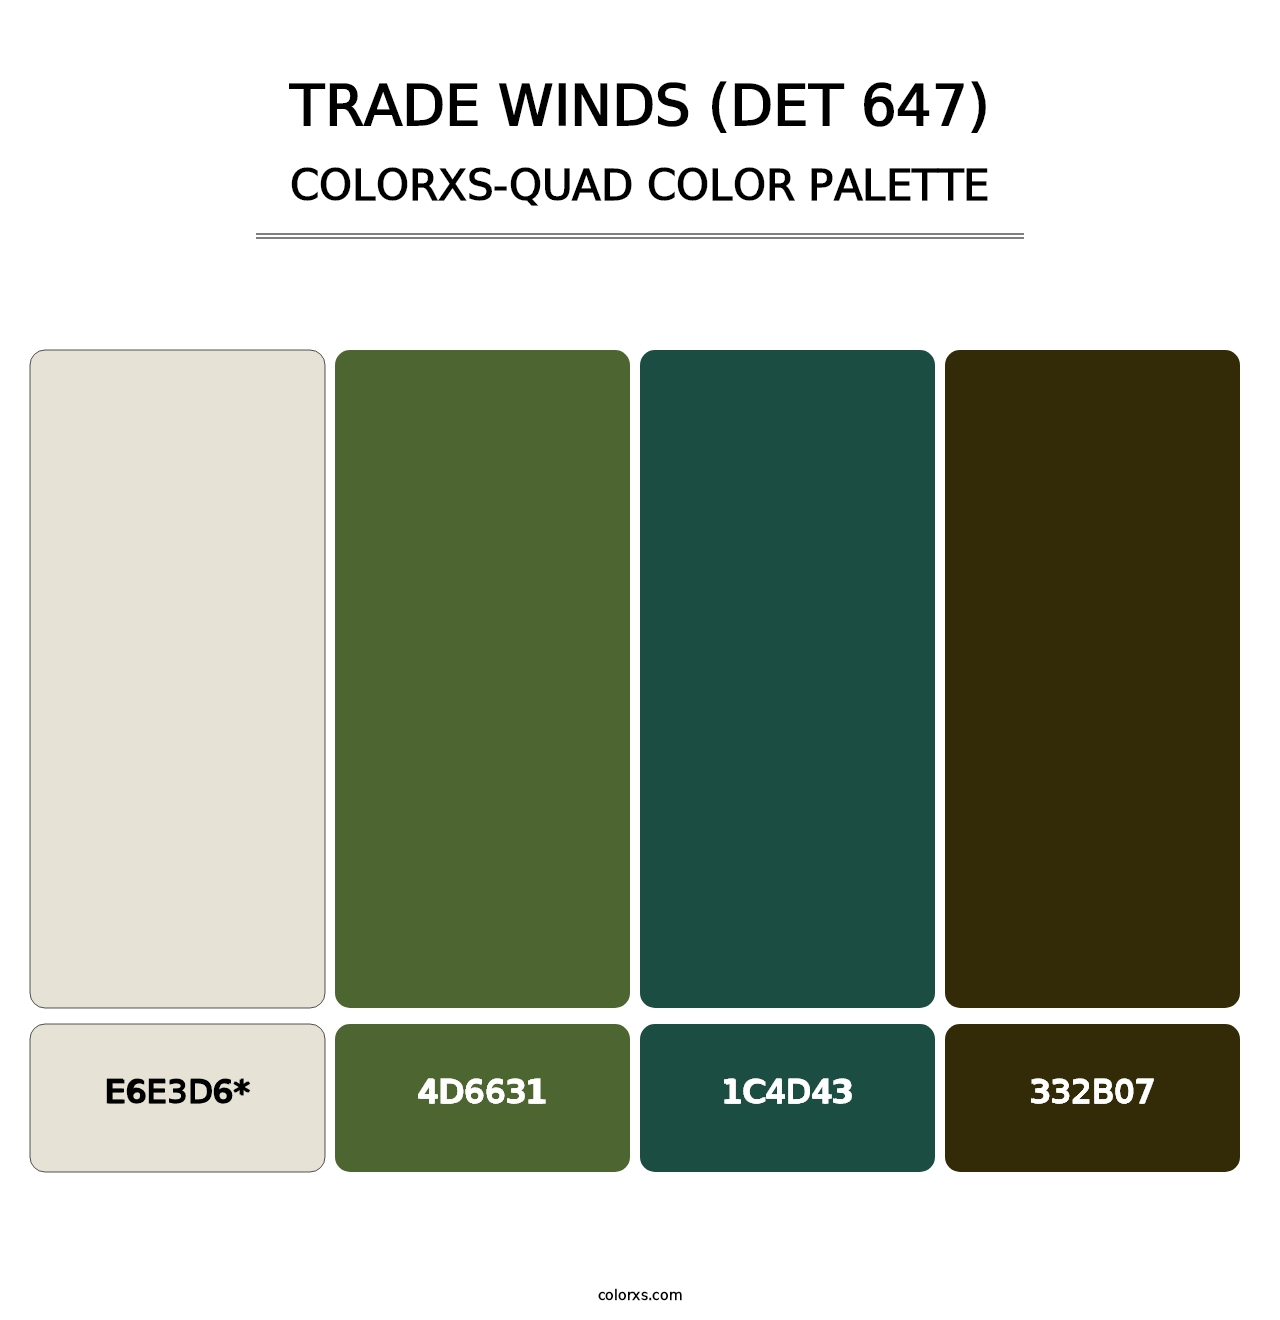 Trade Winds (DET 647) - Colorxs Quad Palette